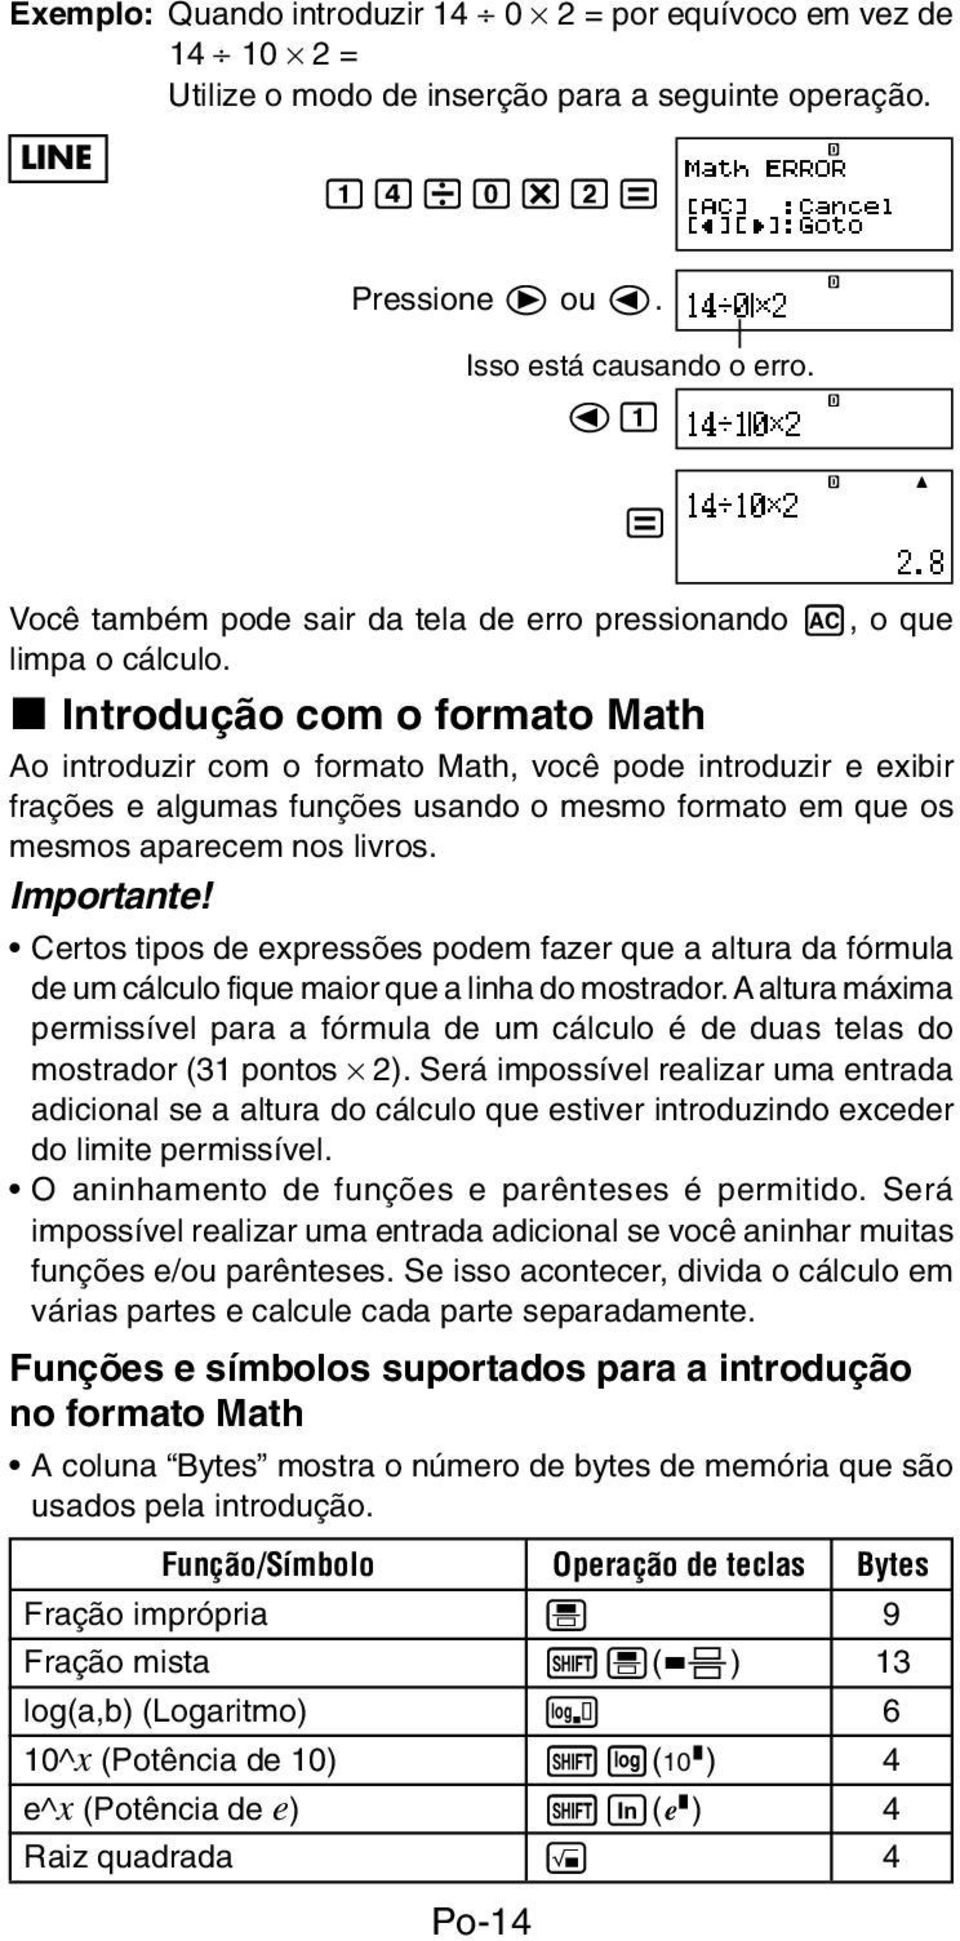 k Introdução com o formato Math Ao introduzir com o formato Math, você pode introduzir e exibir frações e algumas funções usando o mesmo formato em que os mesmos aparecem nos livros. Importante!